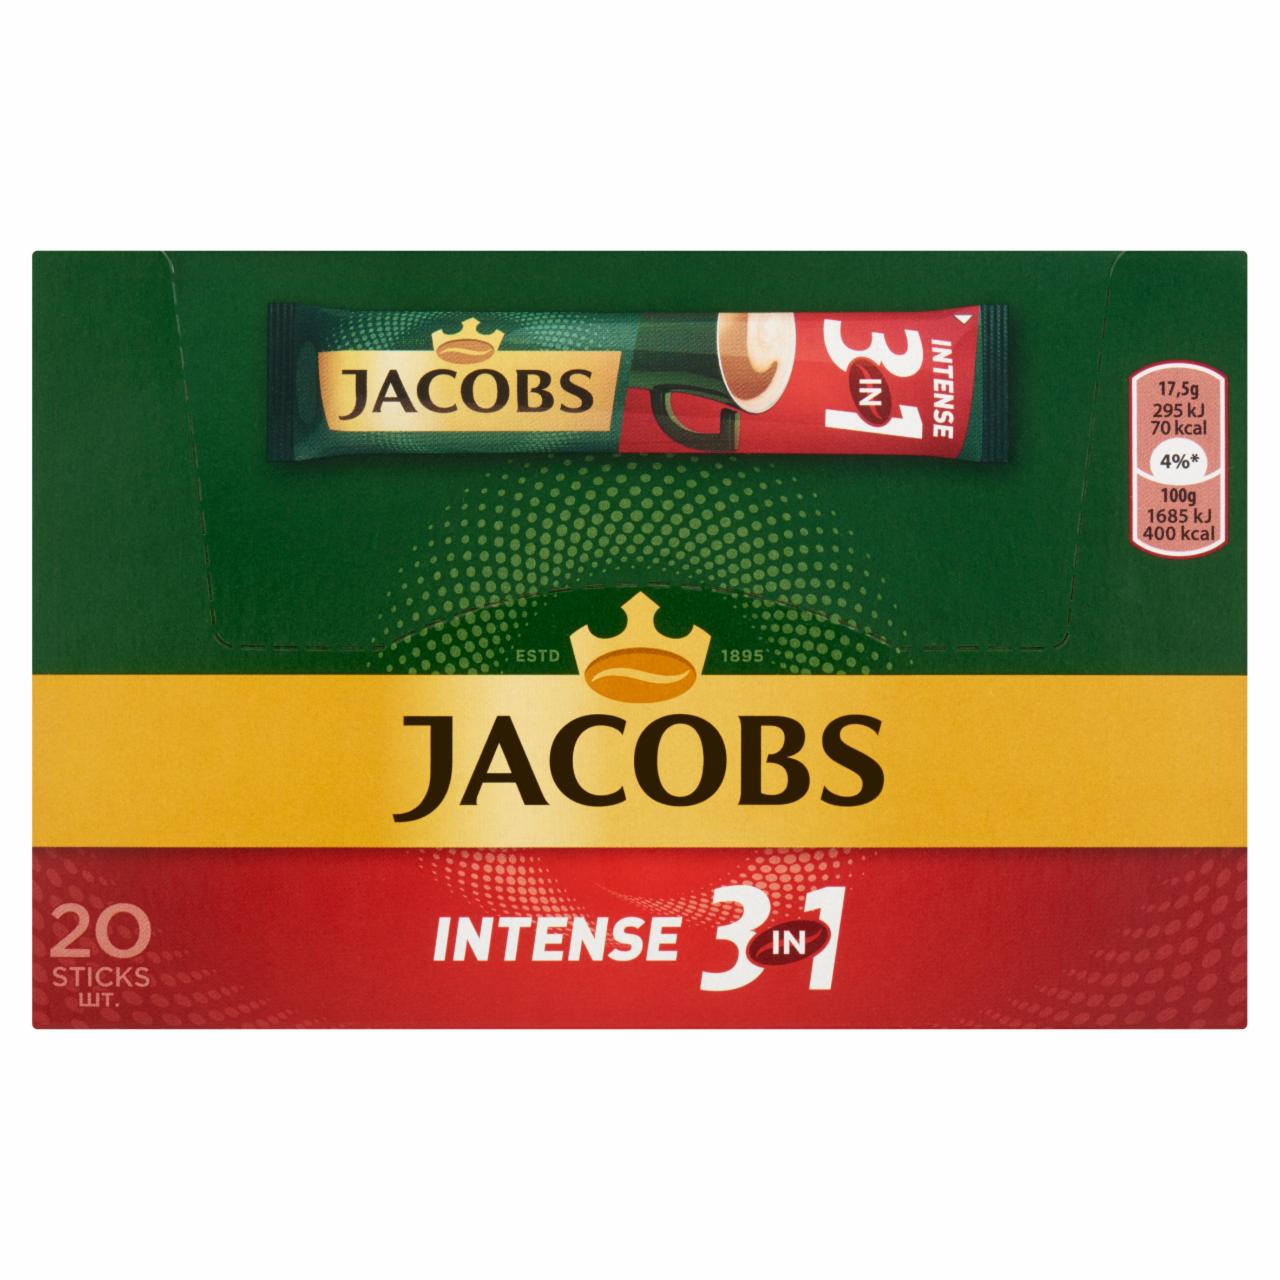 Képek - Jacobs Intense 3in1 azonnal oldódó kávéitalpor 20 db 350 g